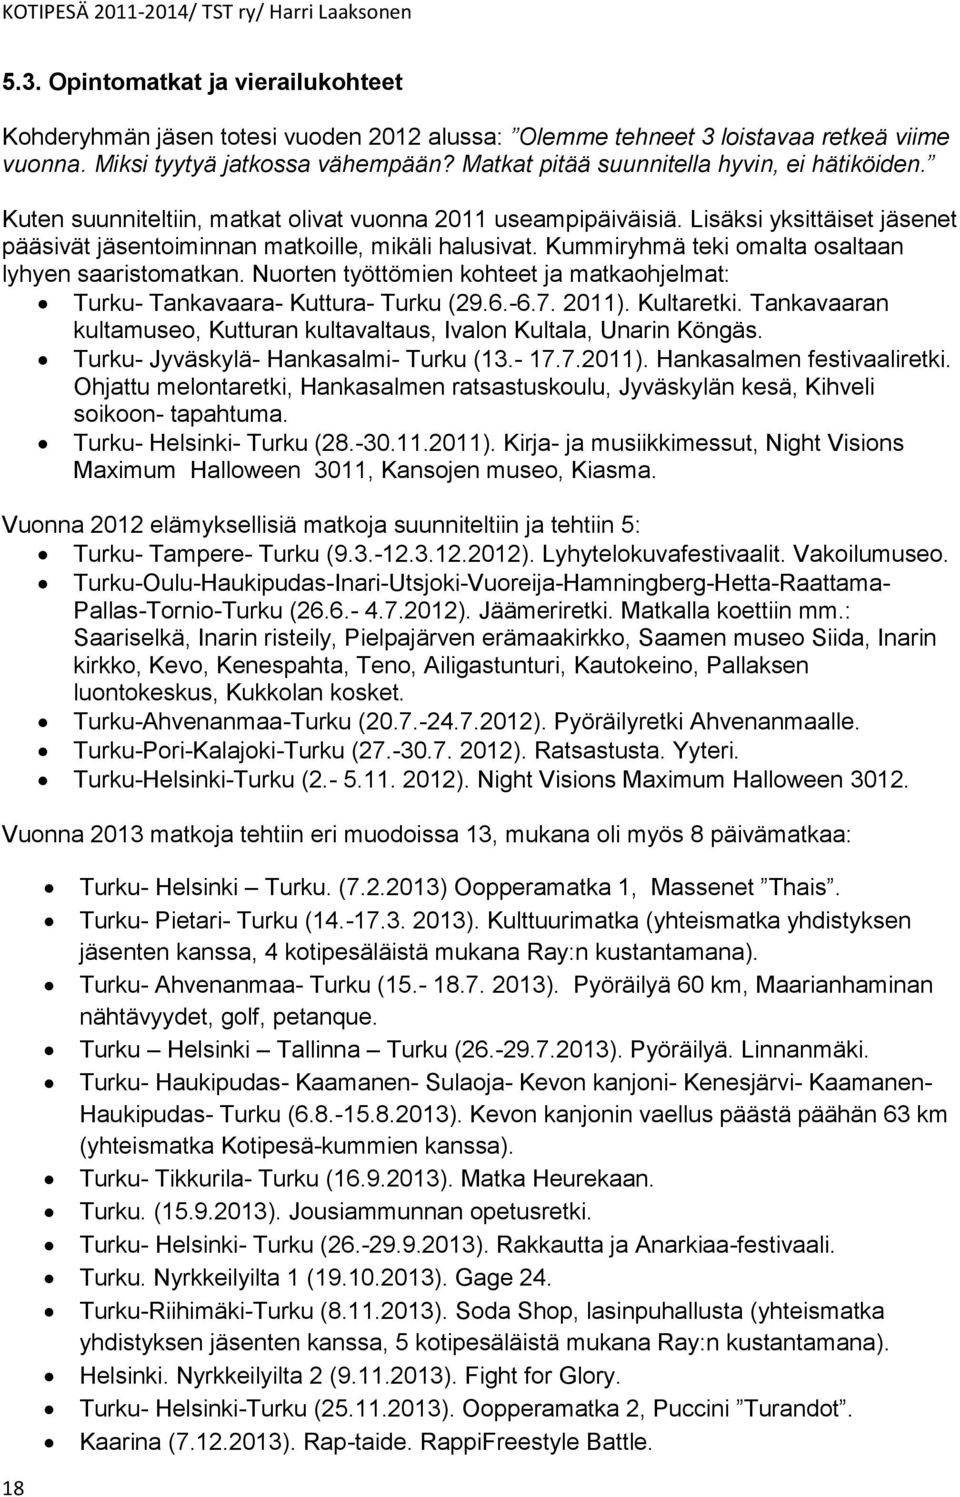 Kummiryhmä teki omalta osaltaan lyhyen saaristomatkan. Nuorten työttömien kohteet ja matkaohjelmat: Turku- Tankavaara- Kuttura- Turku (29.6.-6.7. 2011). Kultaretki.